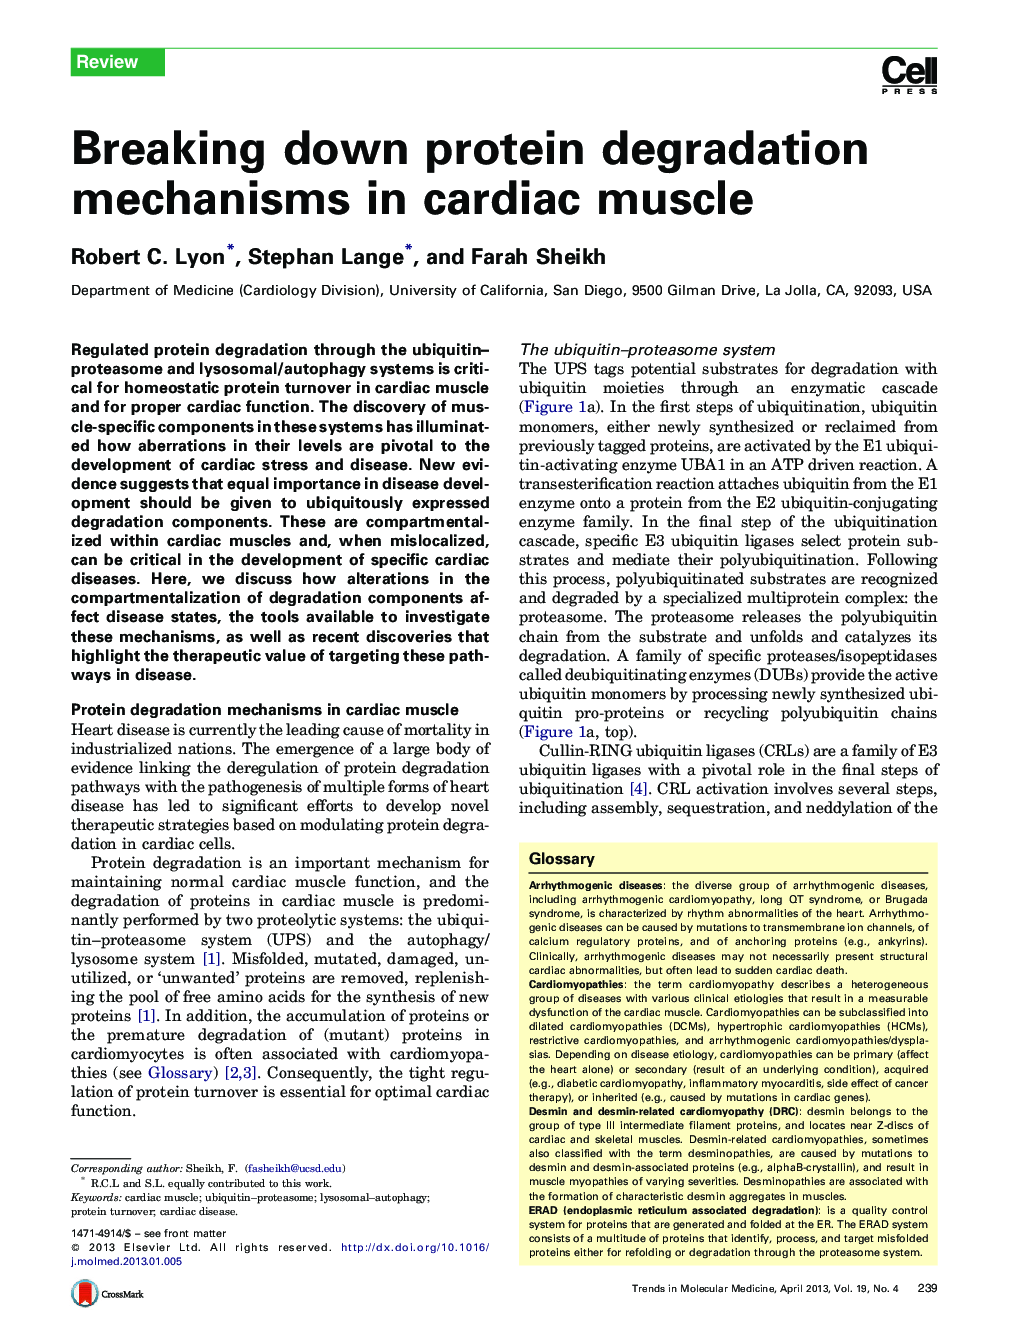 Breaking down protein degradation mechanisms in cardiac muscle